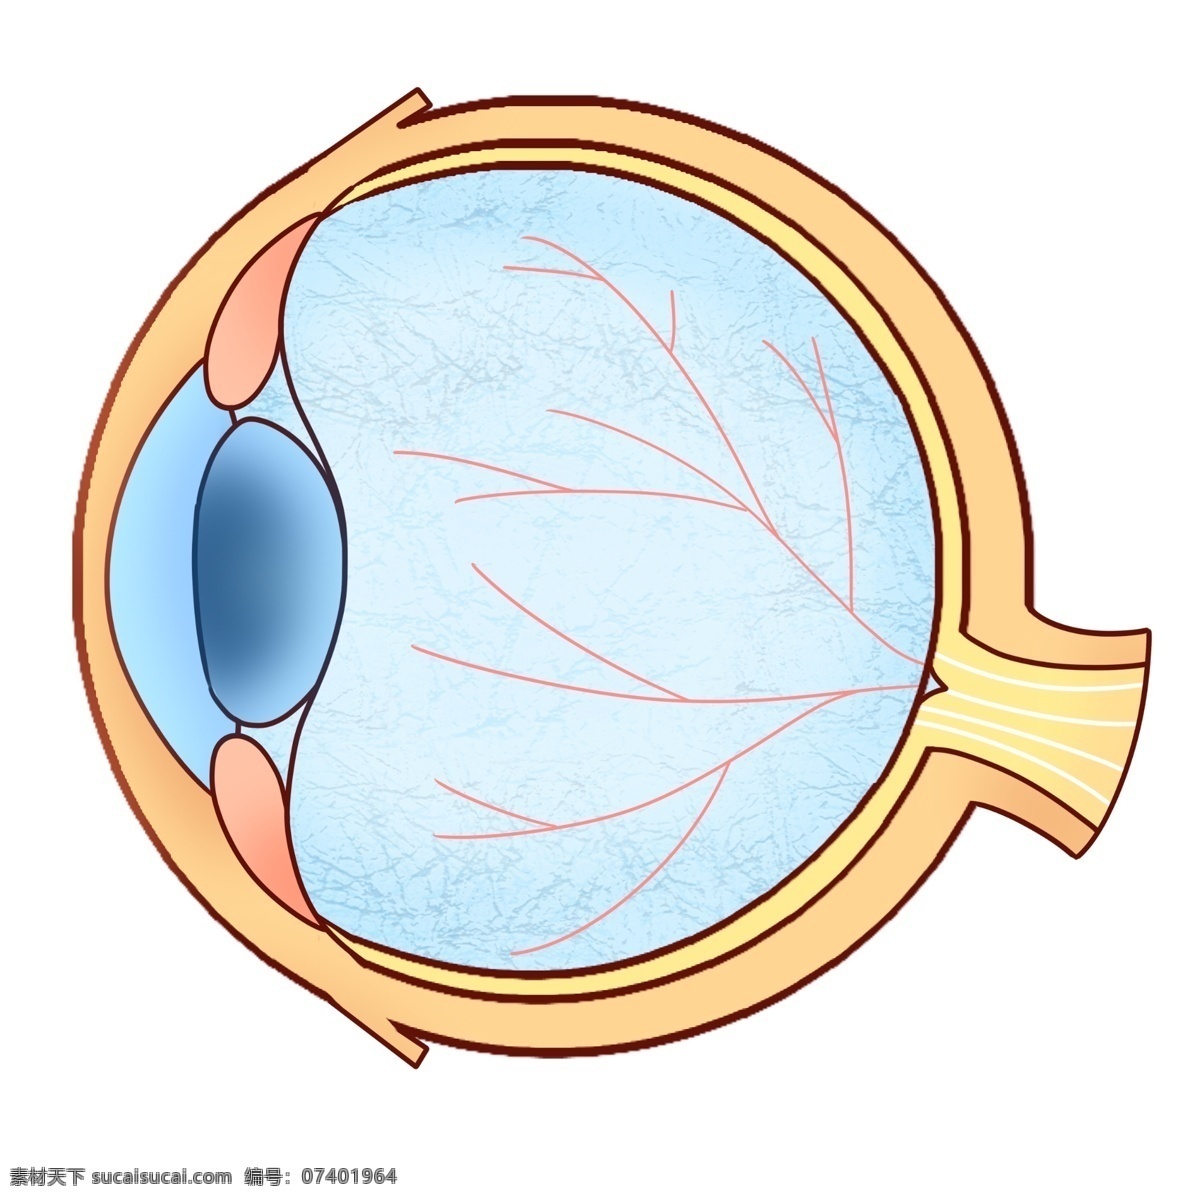 卡通 人体 眼球 器官 蓝色 眼角膜 眼睛 卡通眼球 人体眼球 眼球器官 蓝色眼球